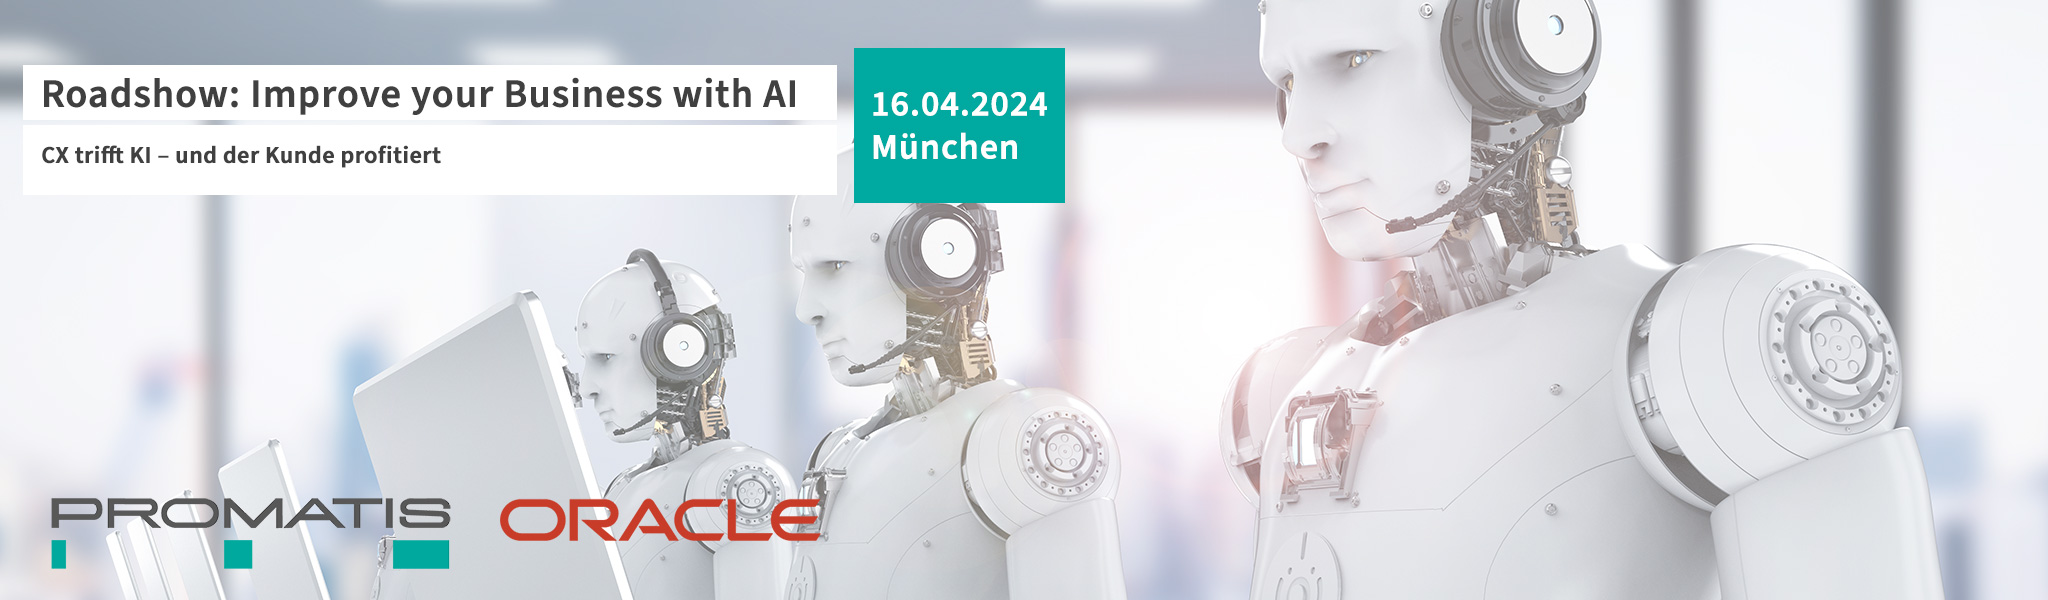 Roadshow: Improve your business with AI am 19.09.2024 in Frankfurt Künstliche Intelligenz in der Supply Chain: Wie man die Lieferkette resilienter machen kann